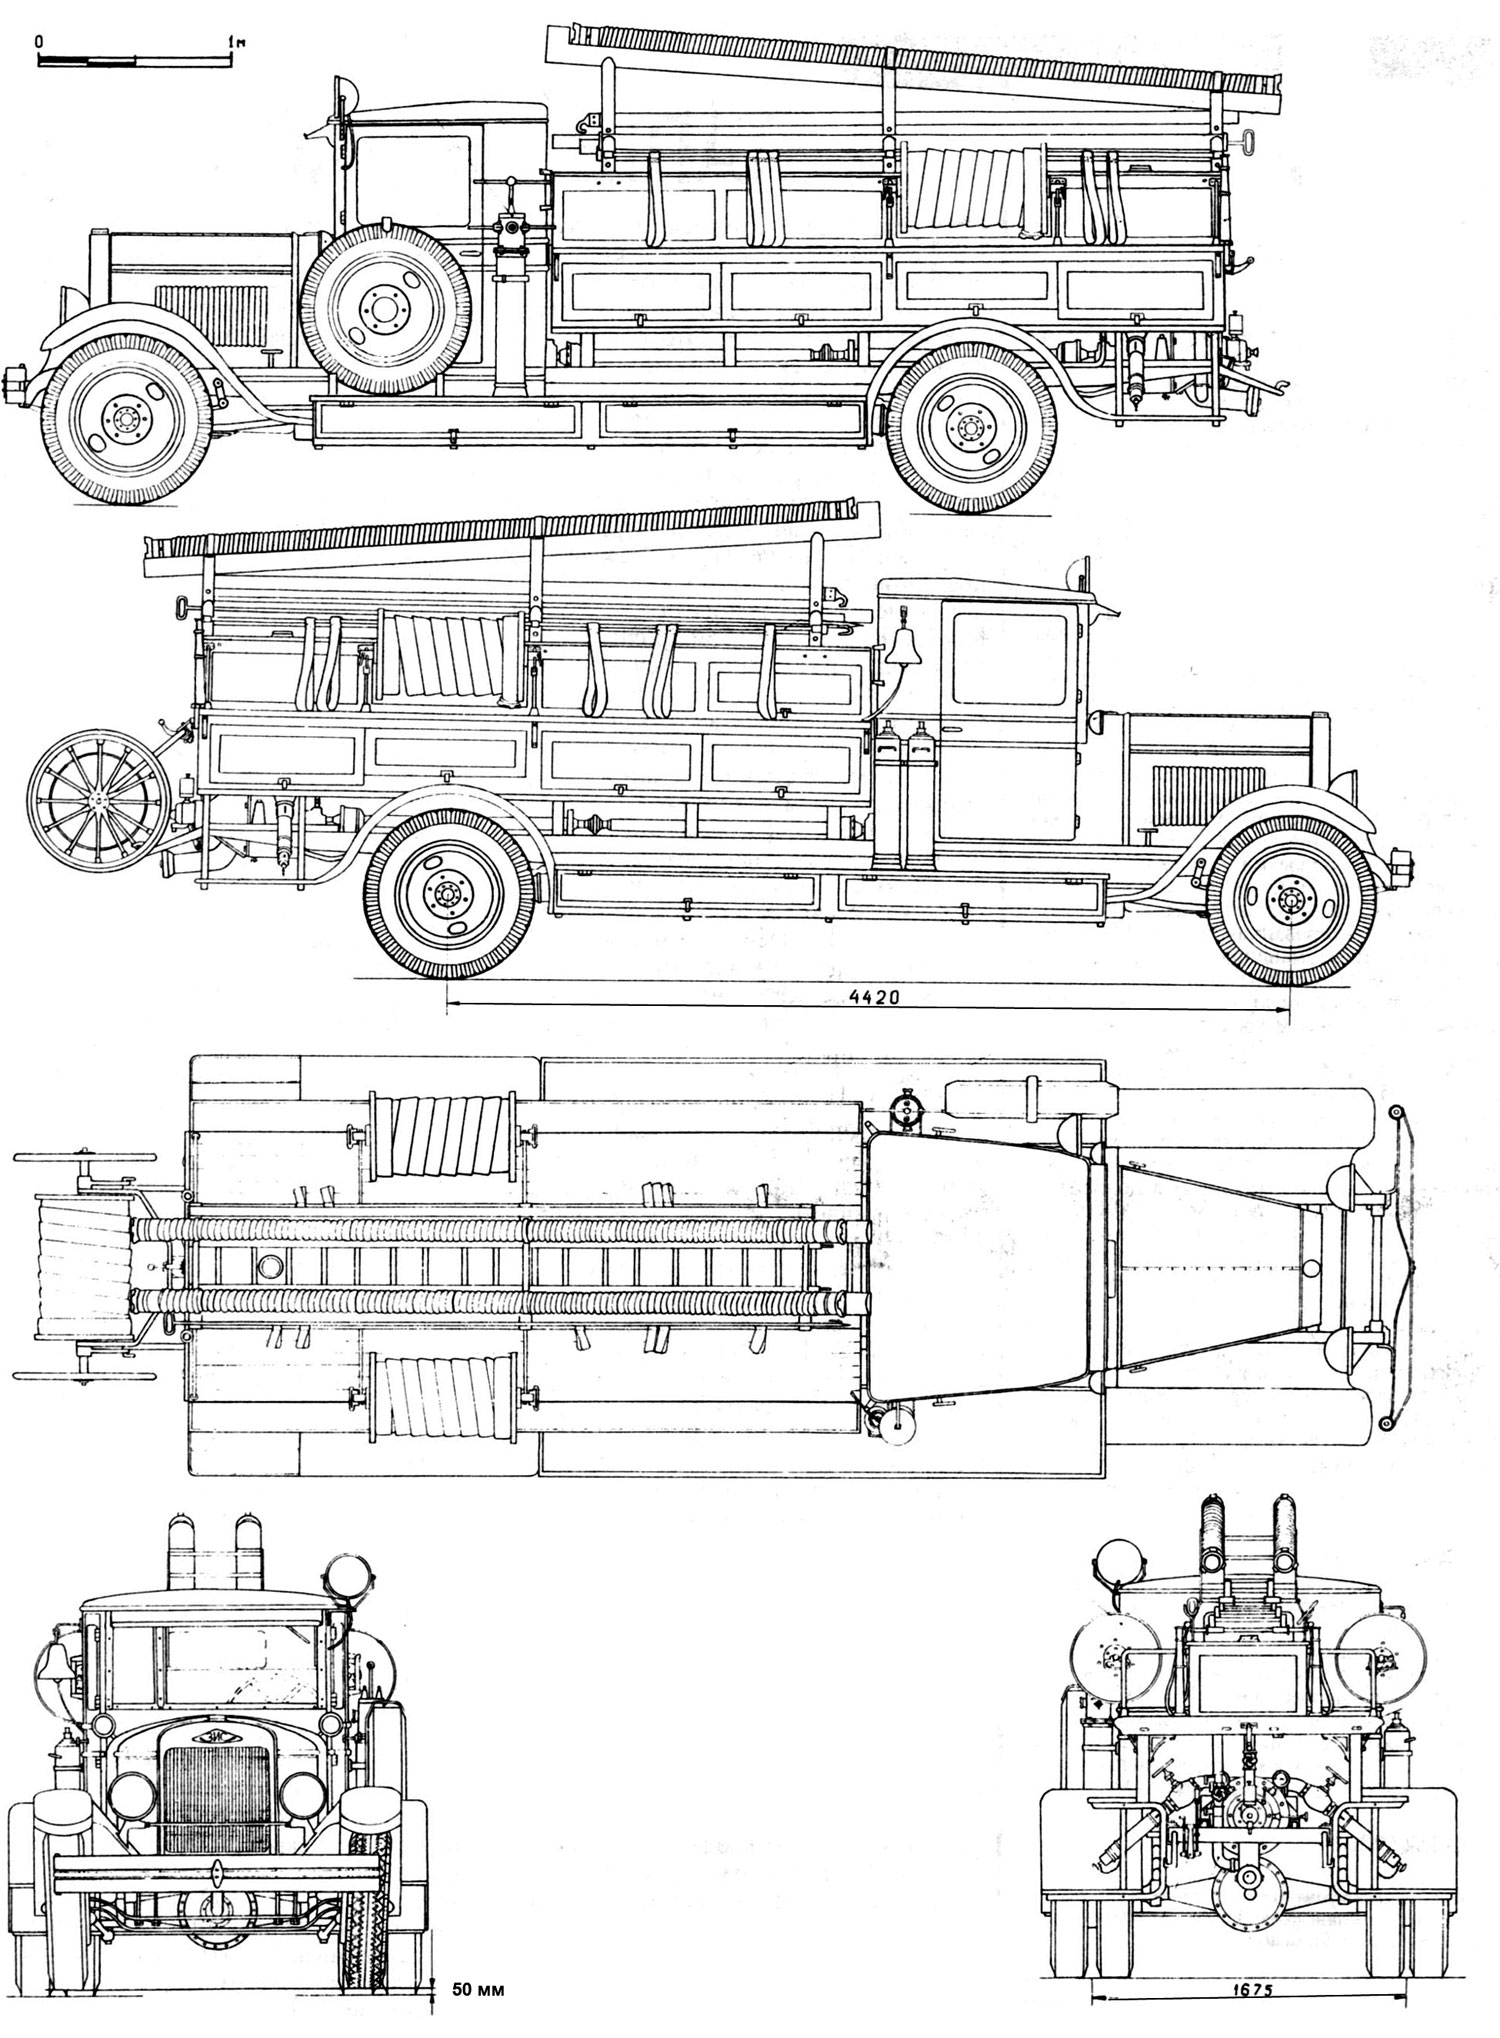 ZIS-11 Fire truck blueprint